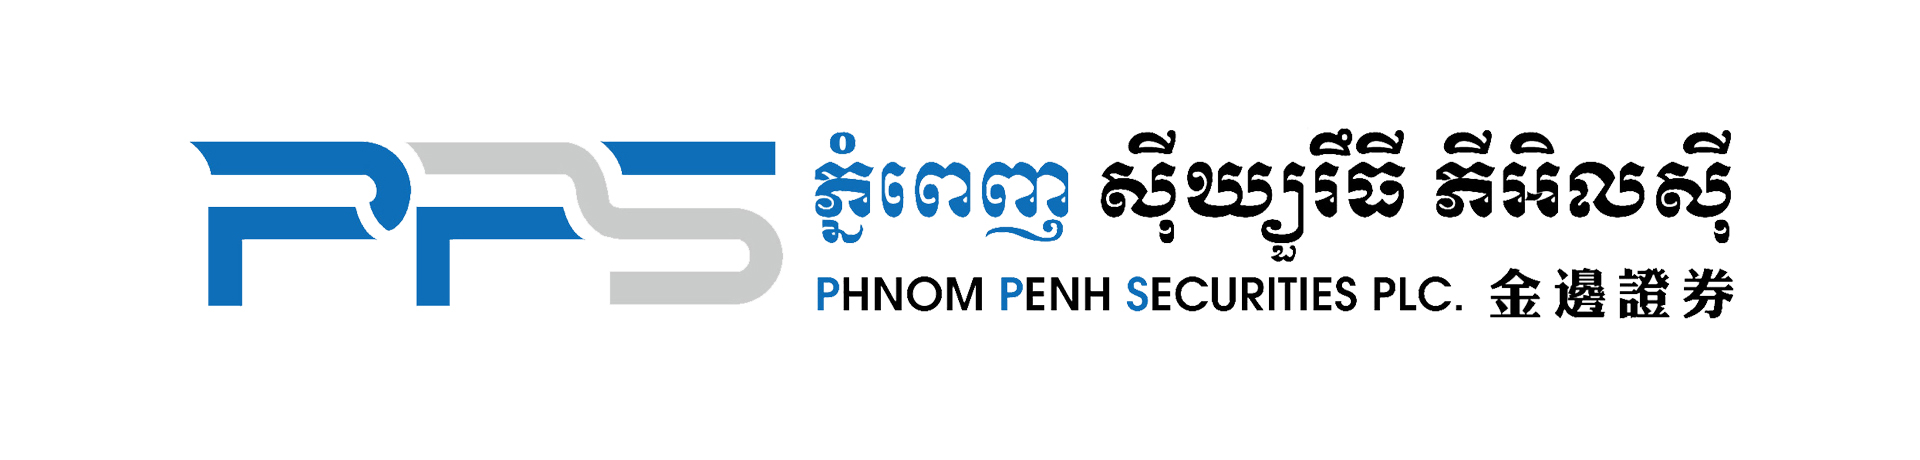 Phnom Penh Securities Plc